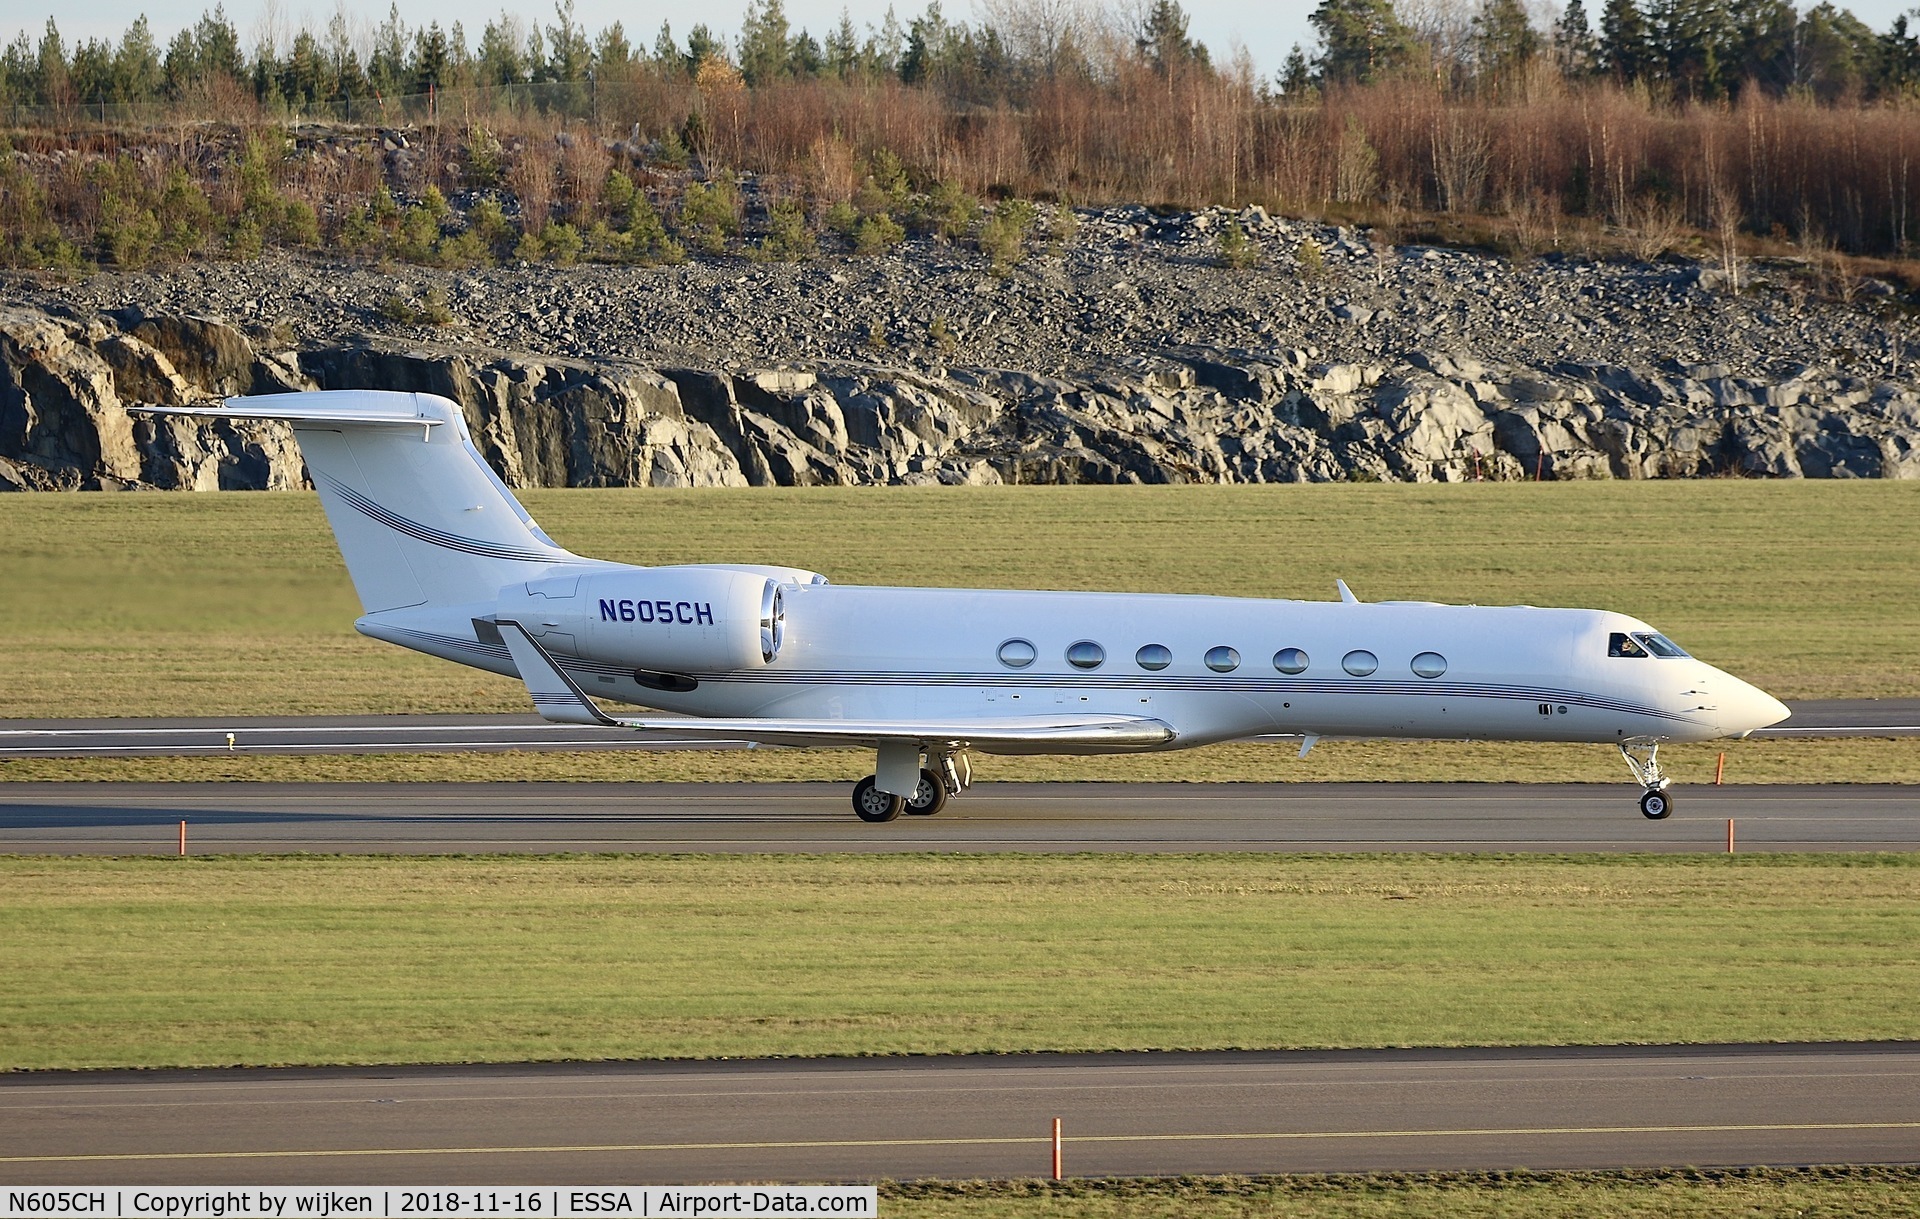 N605CH, 2009 Gulfstream Aerospace GV-SP (G550) C/N 5263, RWY 19L